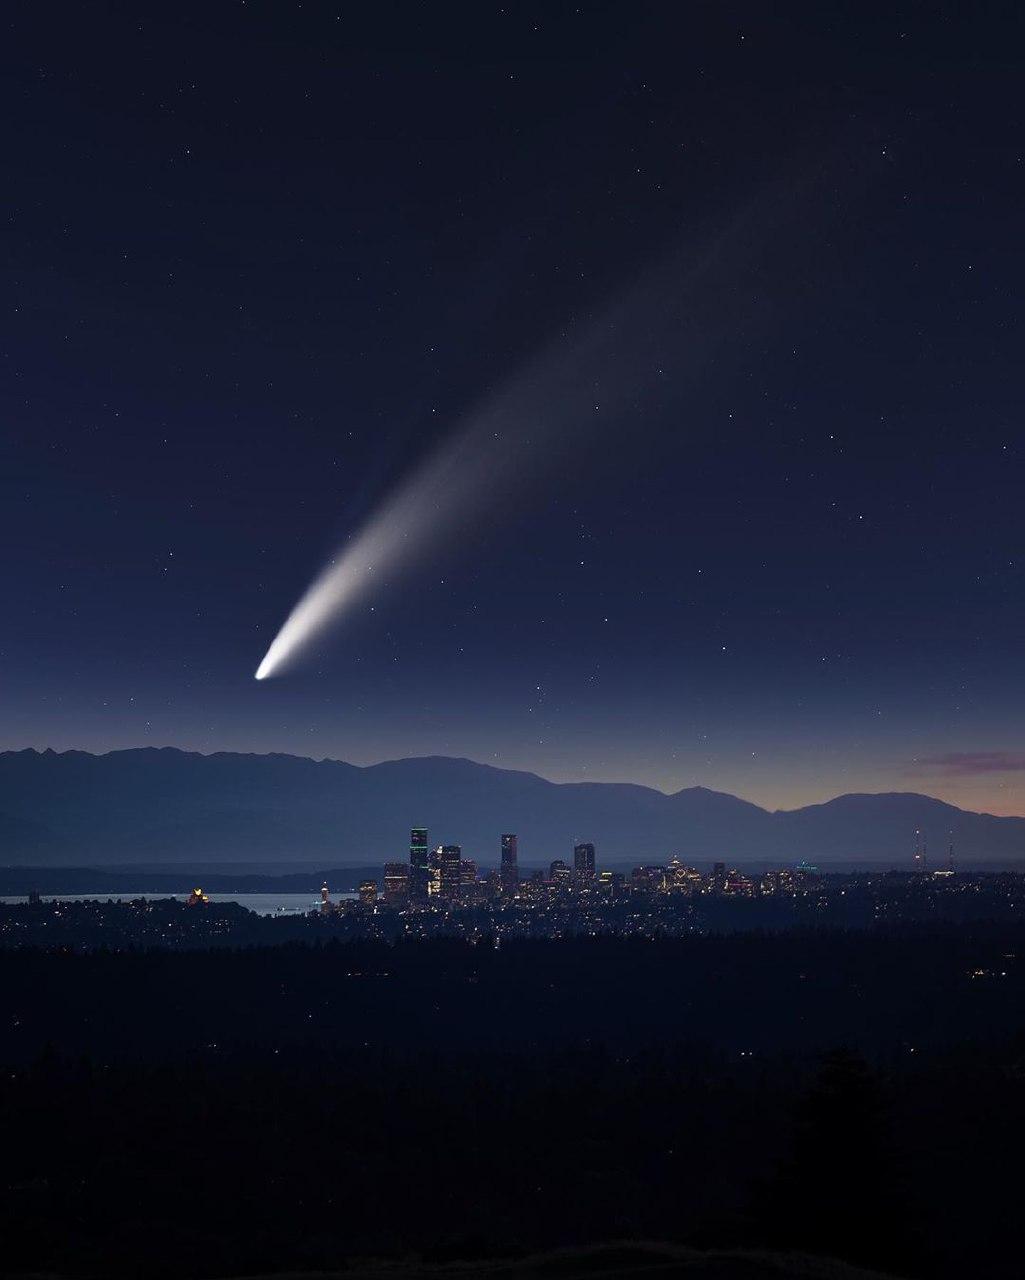 Завораживающие снимки кометы Neowise из разных стран опубликованы в Сети (ФОТО) - фото 15